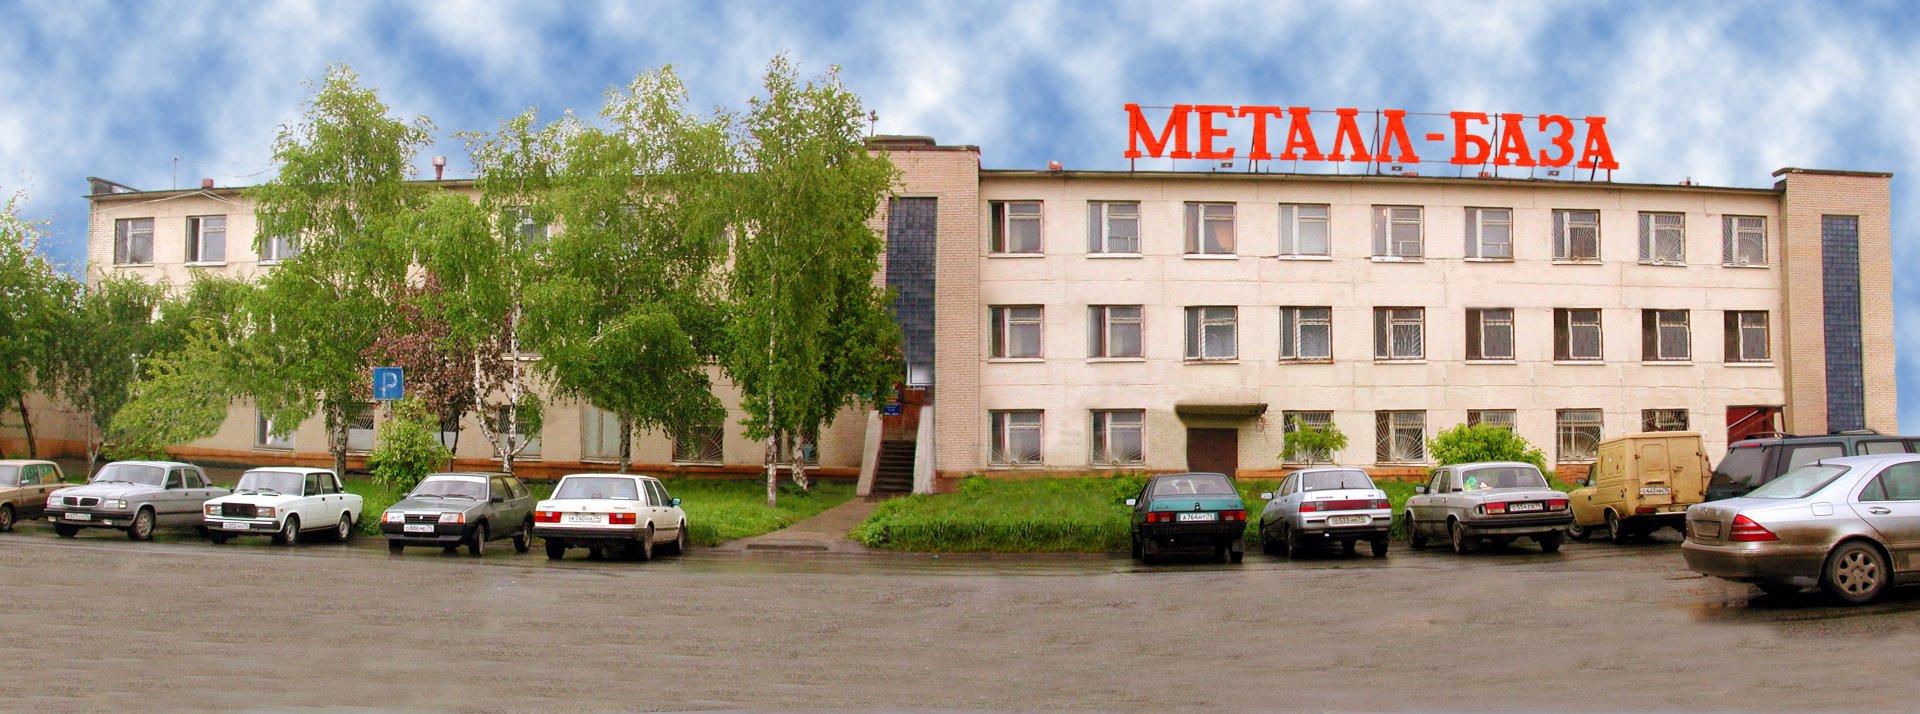 Знакомства В Челябинске Металлургический Район